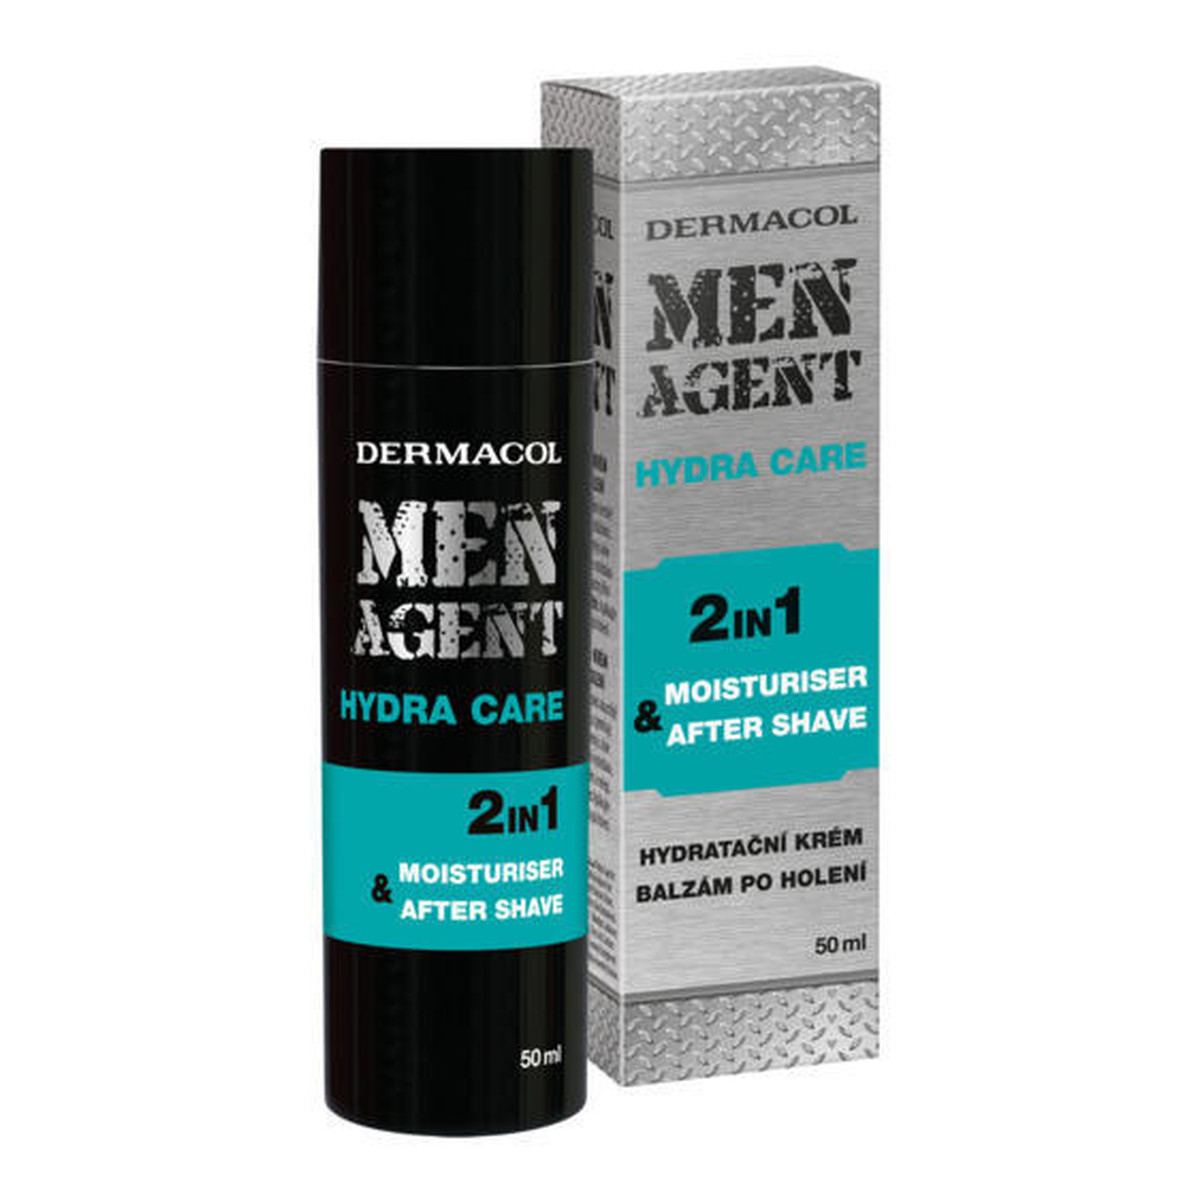 Dermacol MEN AGENT Hydra Care nawilżający balsam po goleniu 50ml